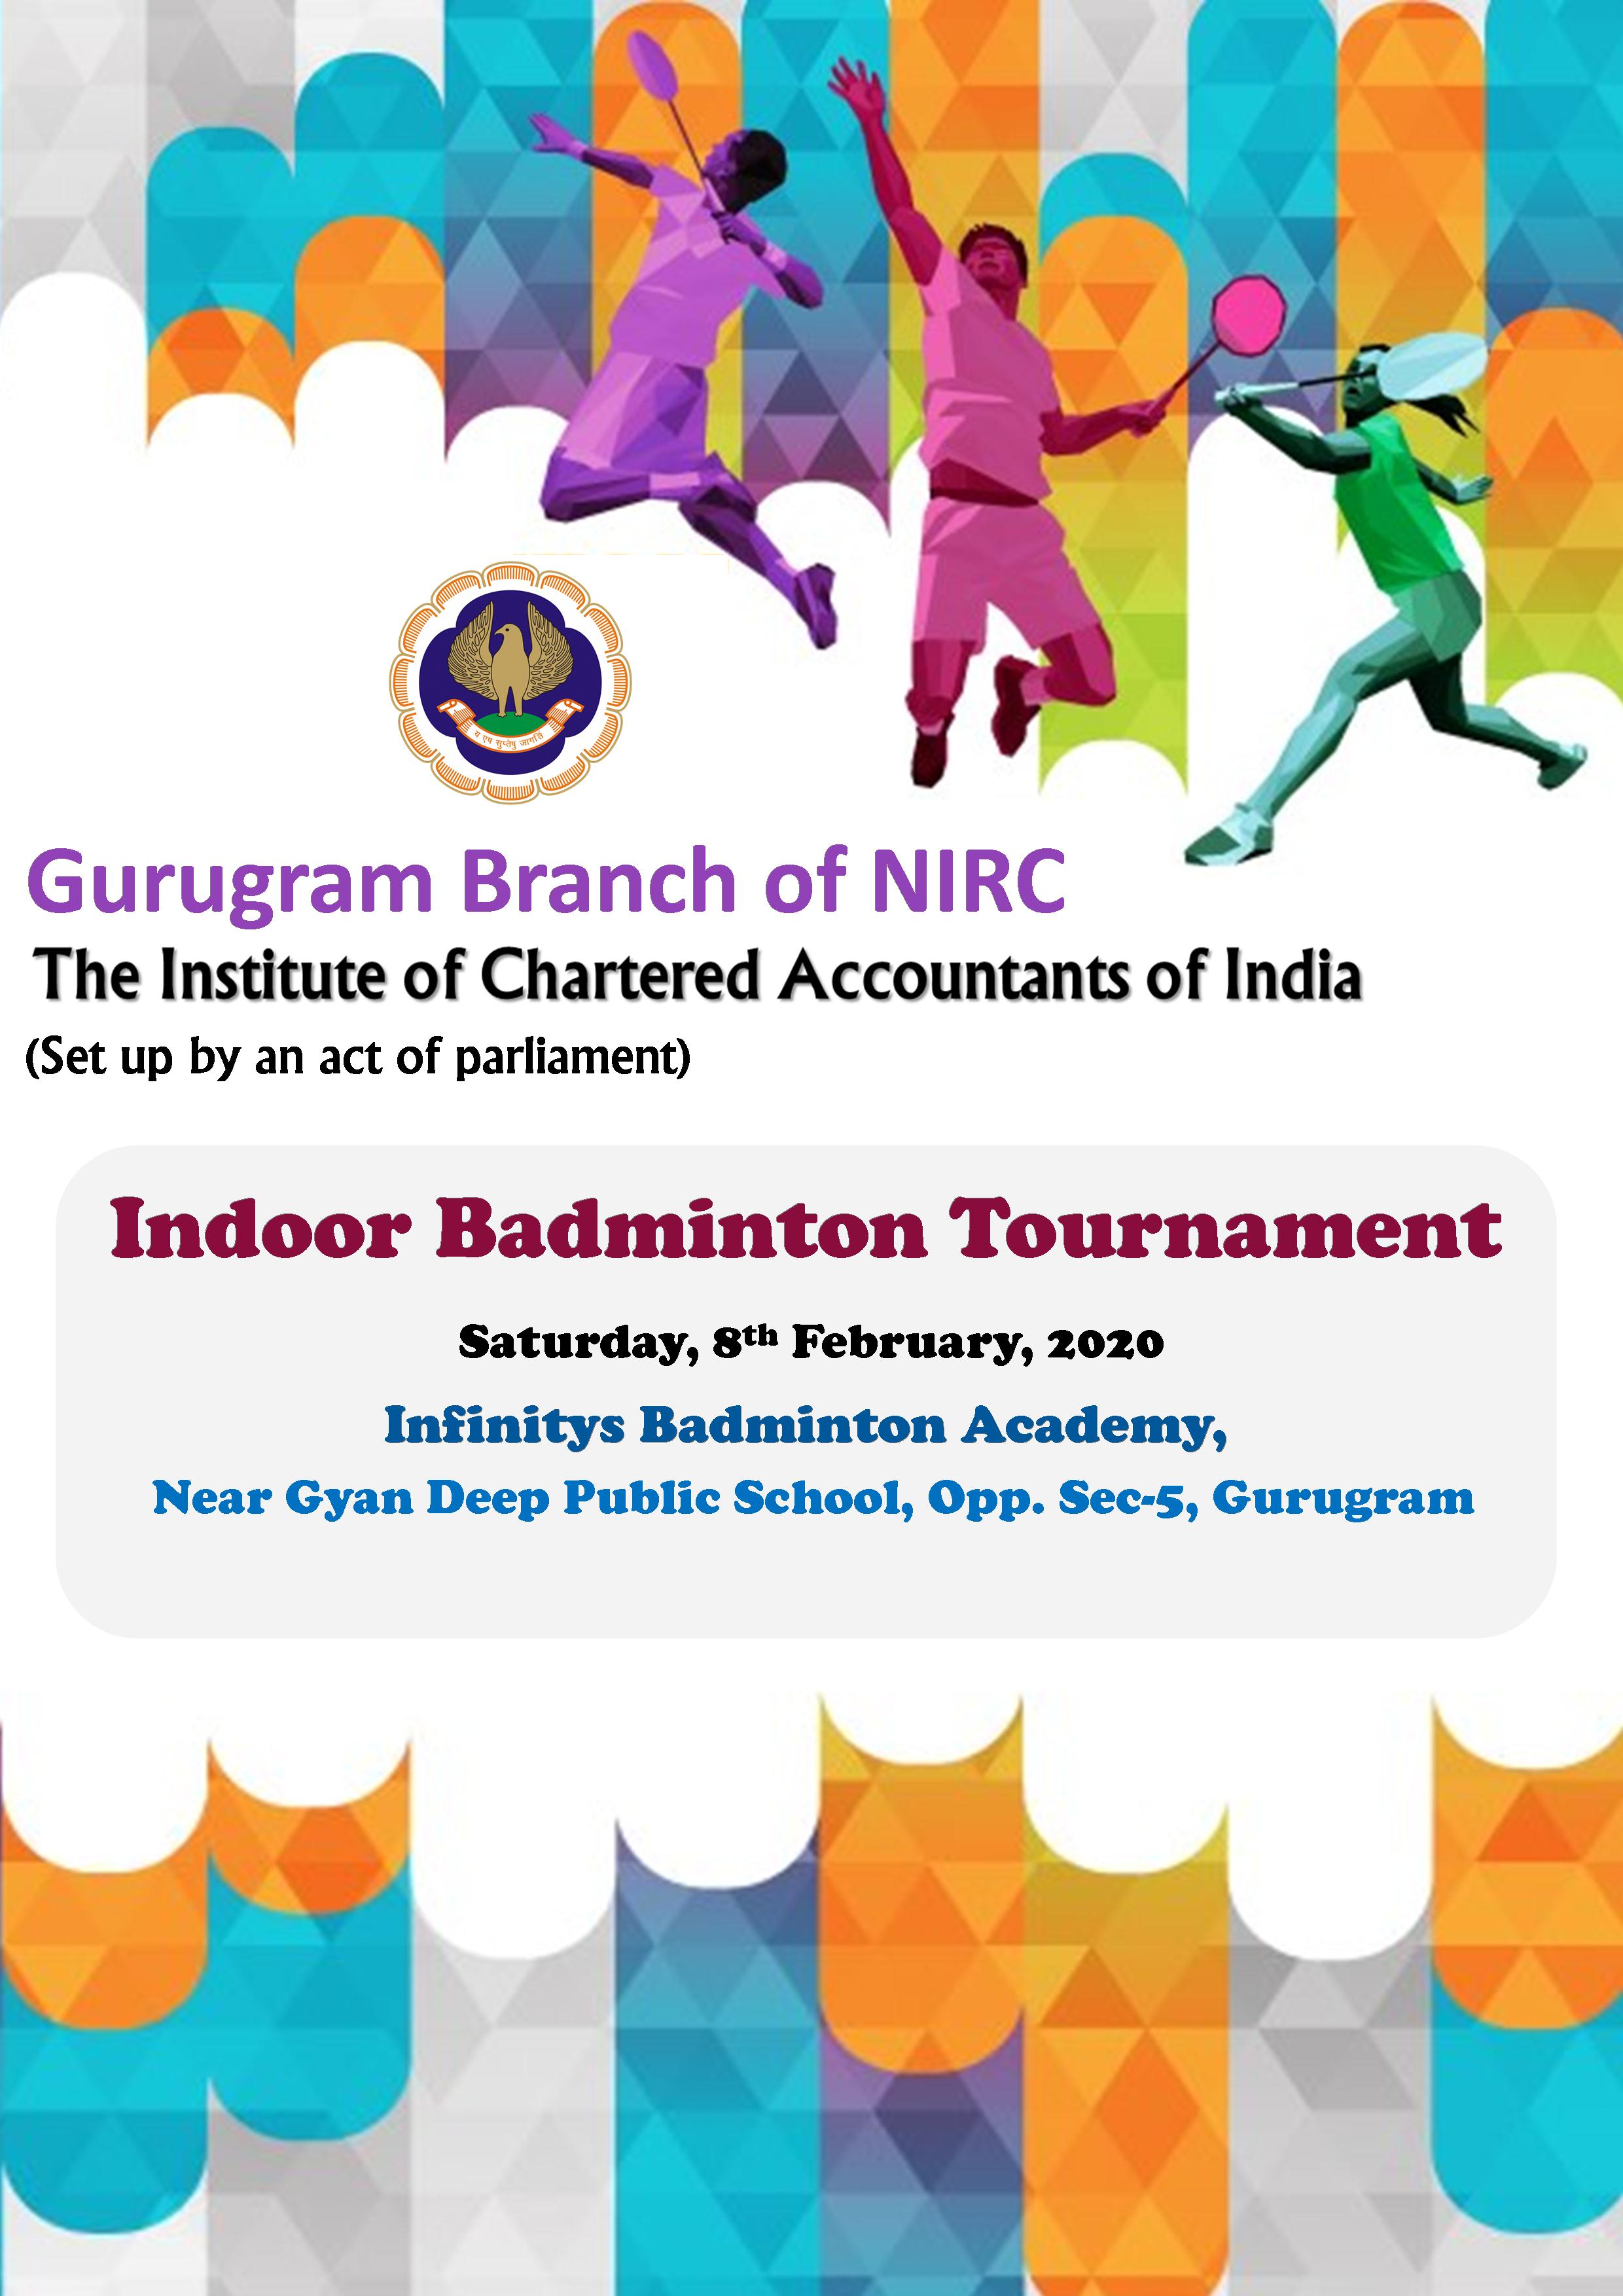 Indoor Badminton Tournament for Gurugram Members